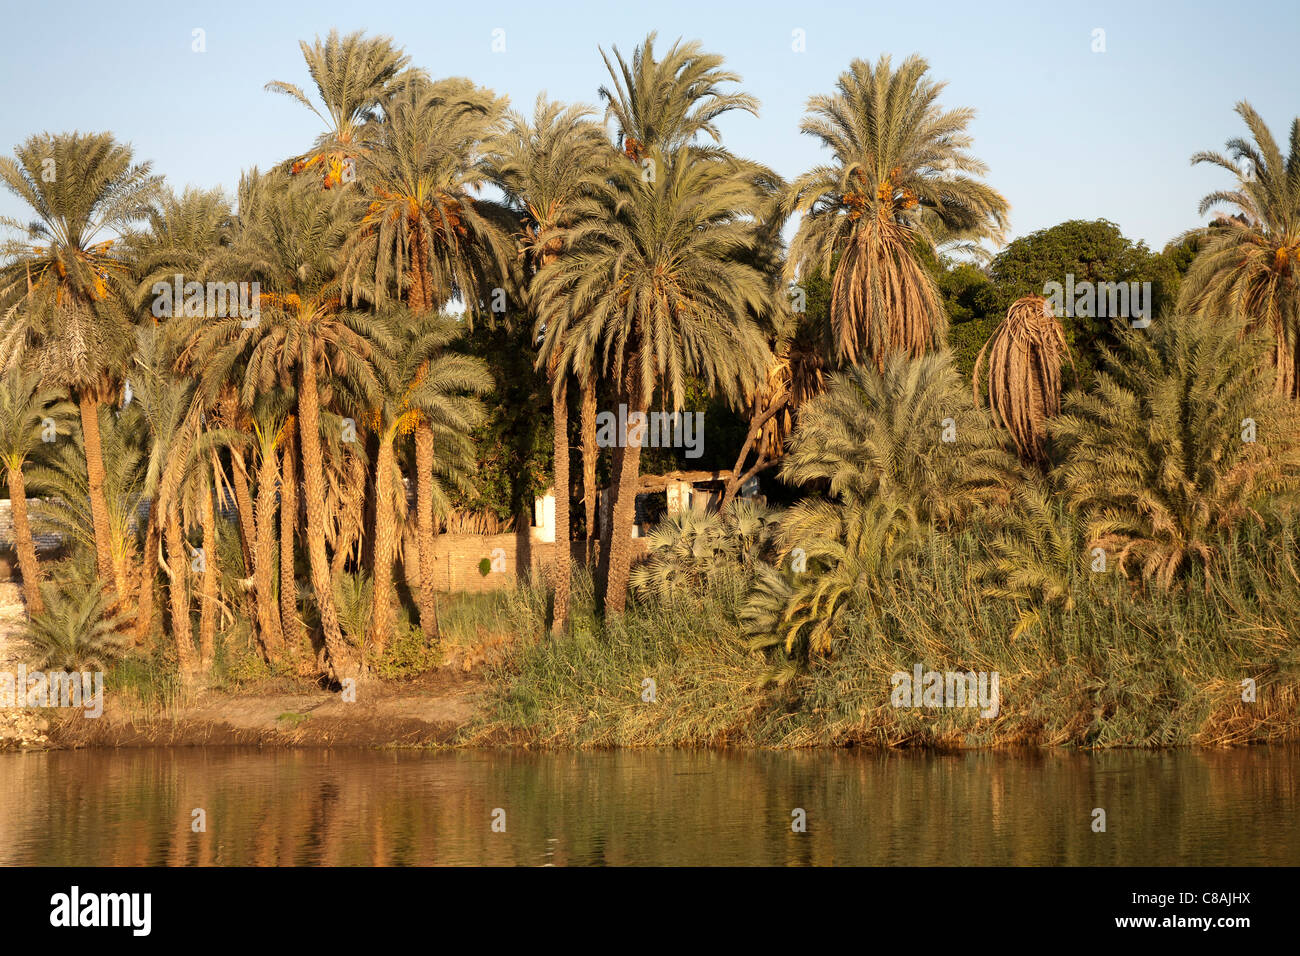 Abschnitt des Nil-Ufer mit überhängenden Palmen und kleinen Schlamm-Backstein-Haus in goldenes Licht spiegelt sich in den Fluss getaucht Stockfoto